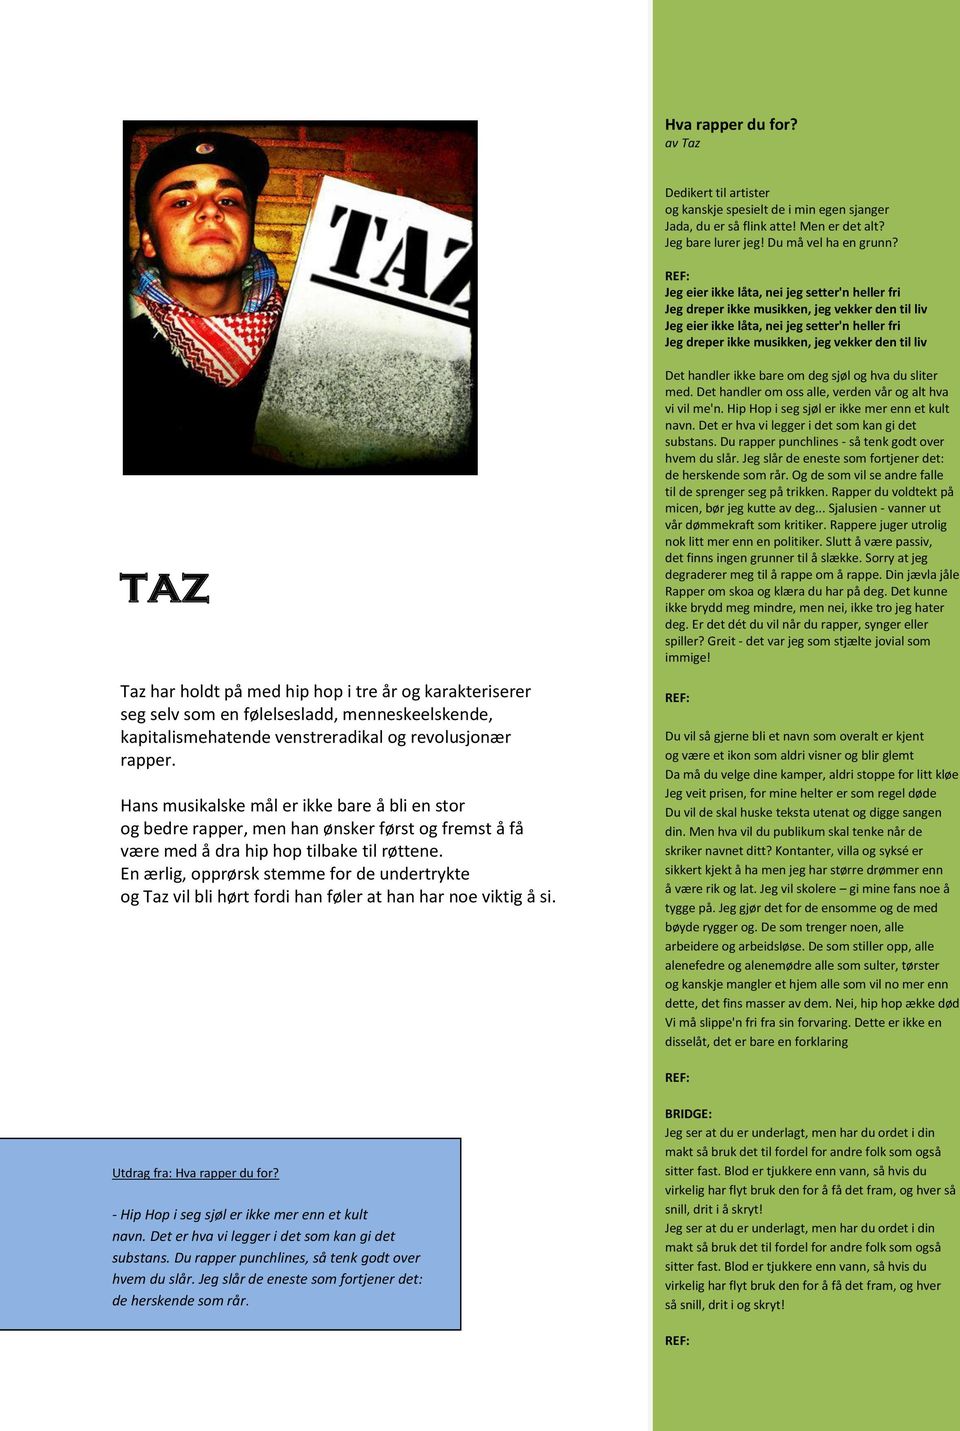 Taz har holdt på med hip hop i tre år og karakteriserer seg selv som en følelsesladd, menneskeelskende, kapitalismehatende venstreradikal og revolusjonær rapper.